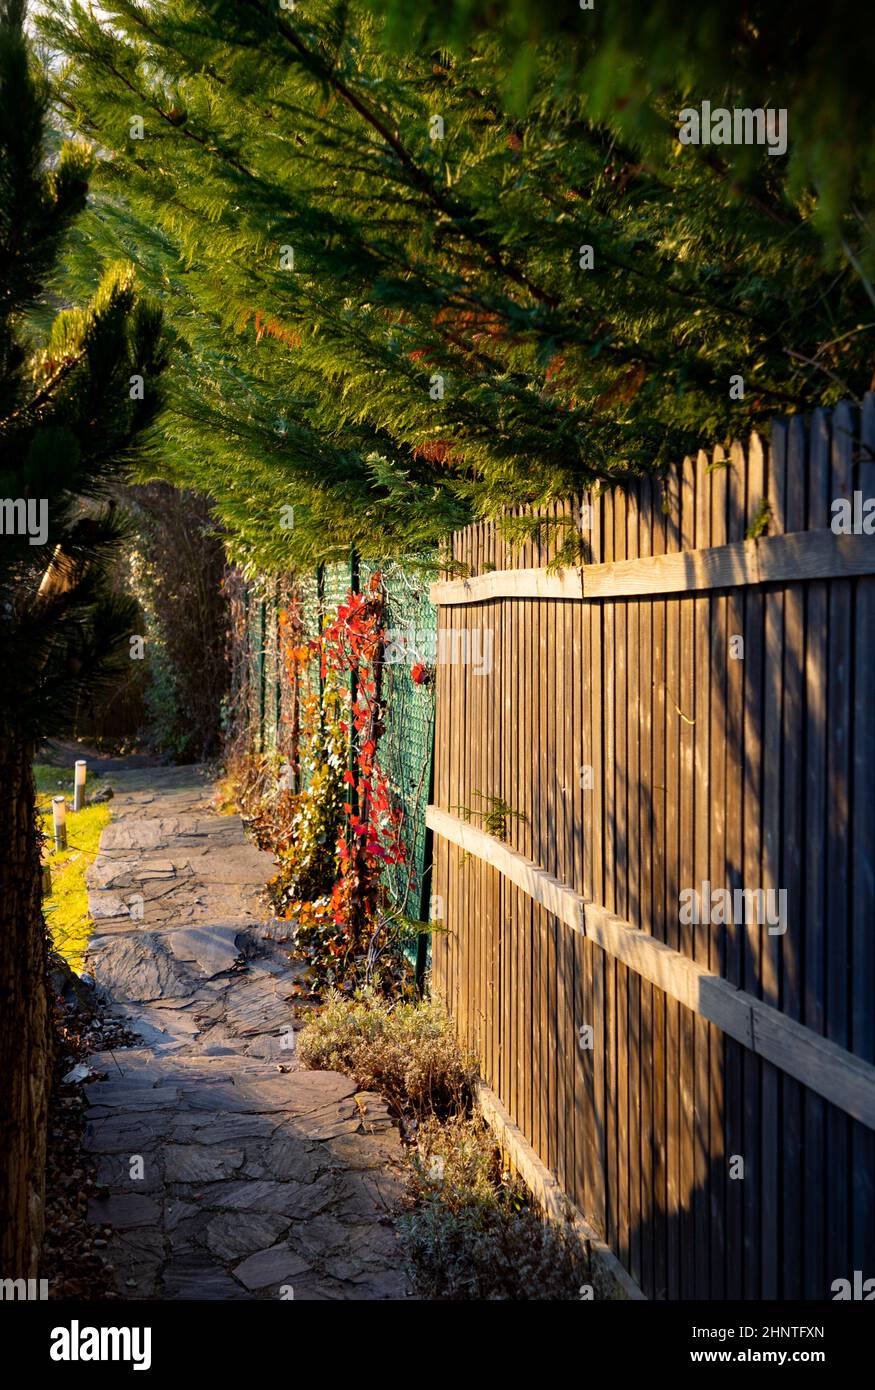 lumière du matin sur un chemin de jardin avec clôture en bois et arbres verts aux couleurs intenses Banque D'Images